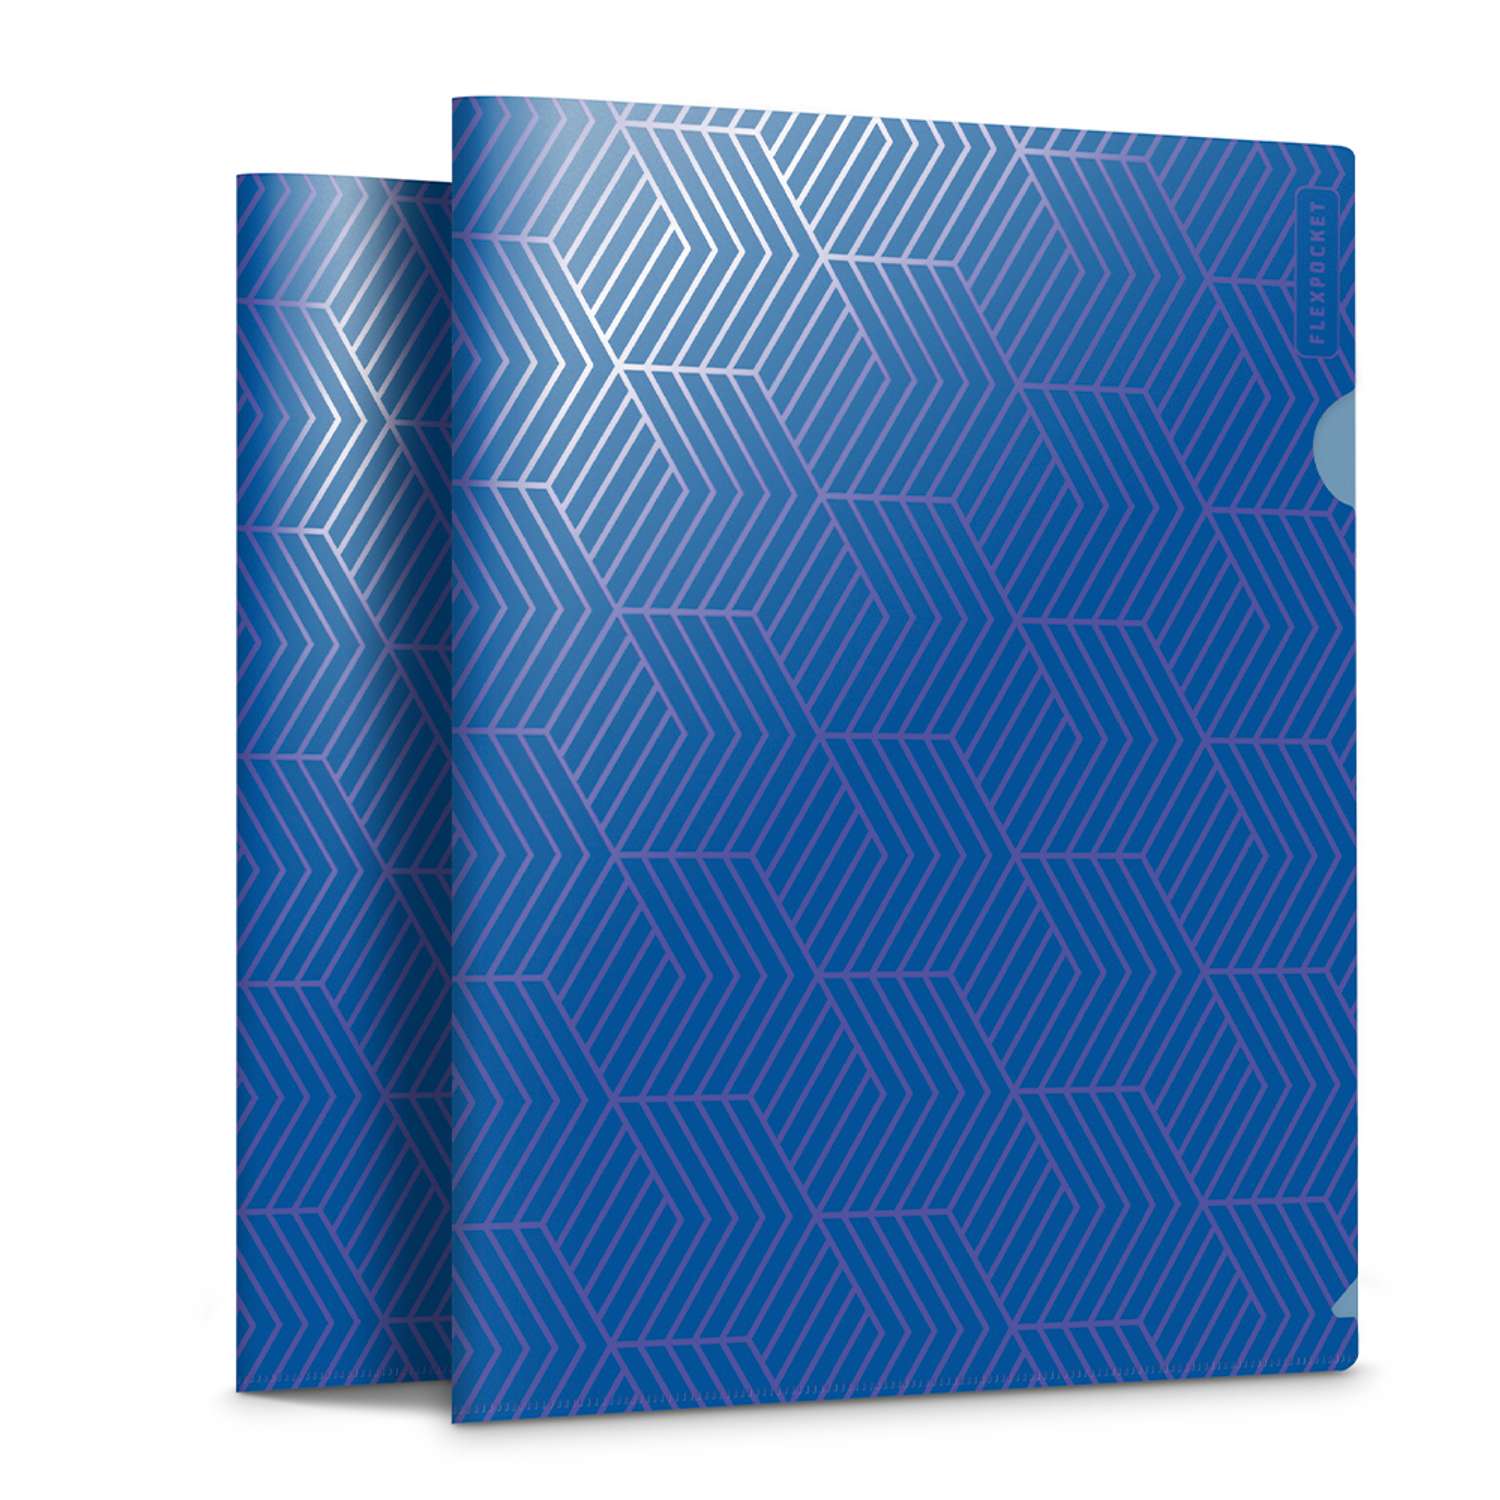 Папка-уголок для документов Flexpocket канцелярская синего цвета в комплекте 2 шт - фото 1